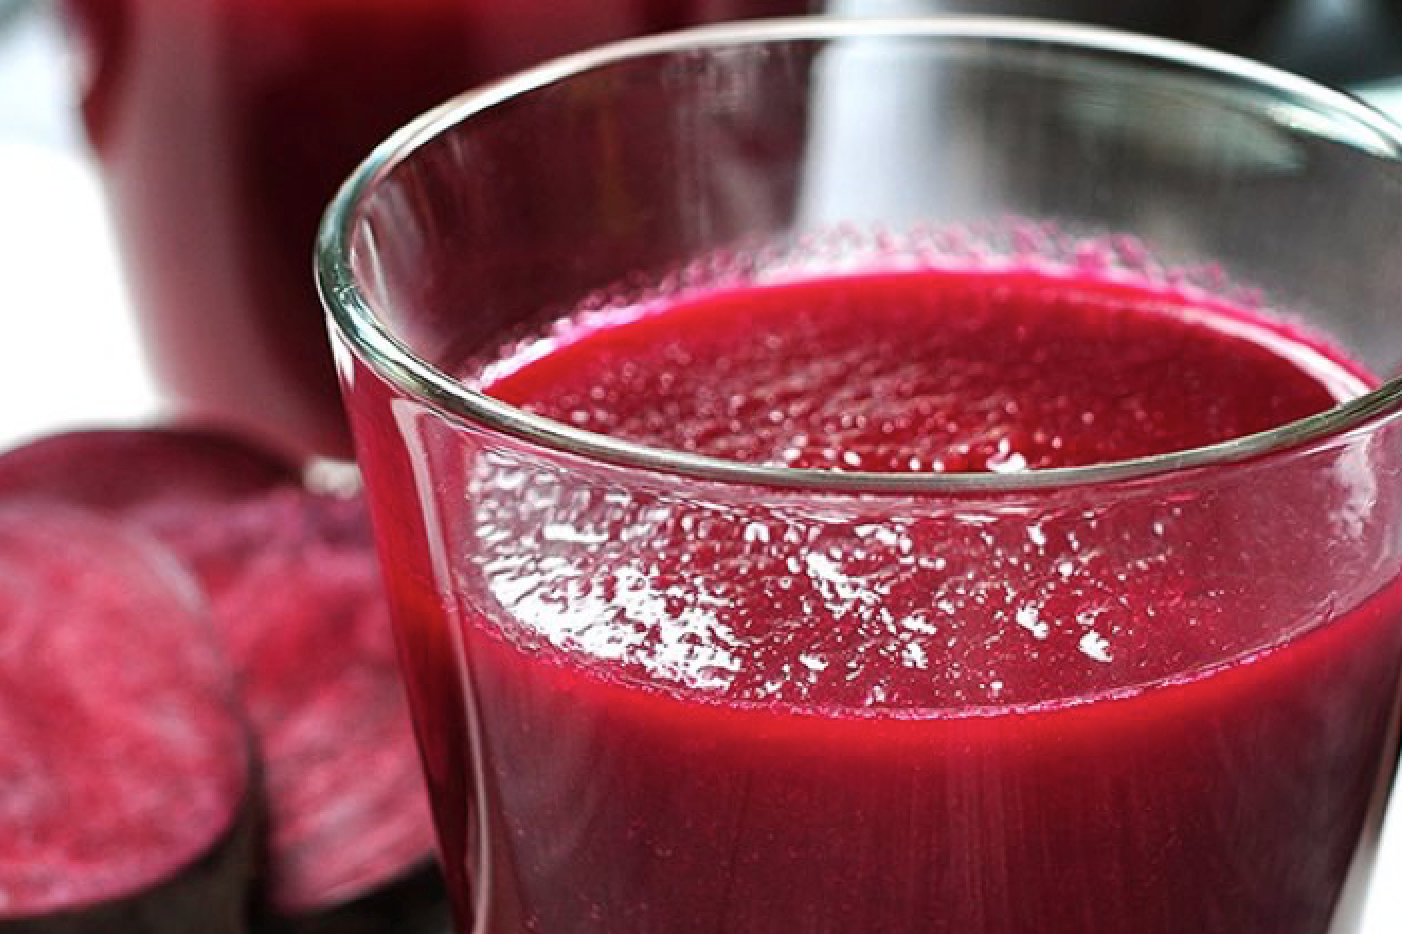 Glas med rödbetsjuice - rödbetsjuice testas mot hjärtsvikt.